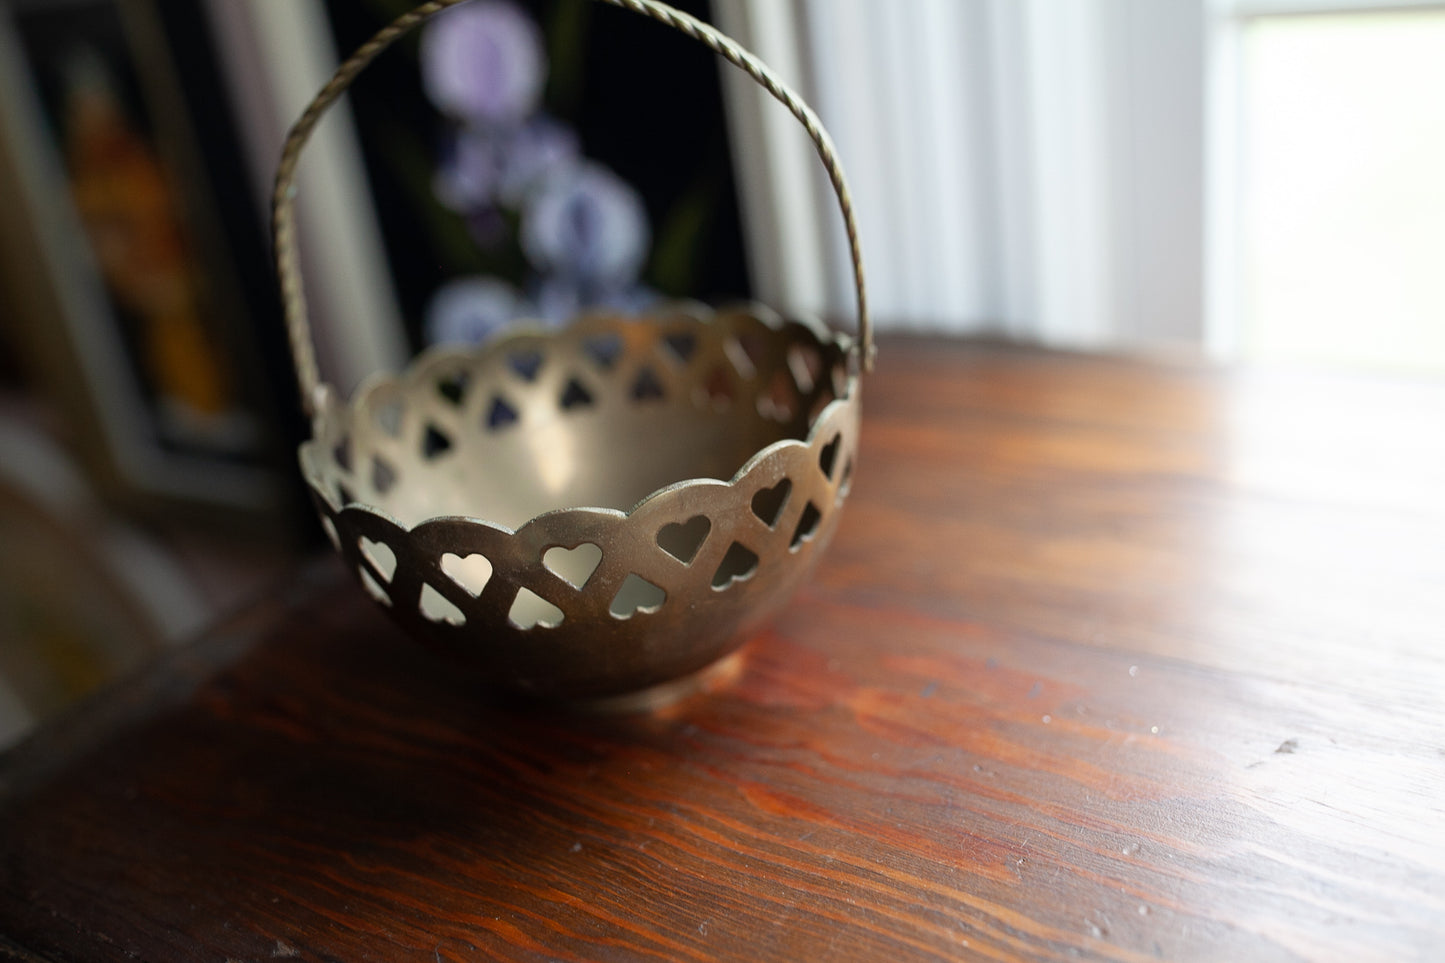 Heart Brass Basket- Purple flowers